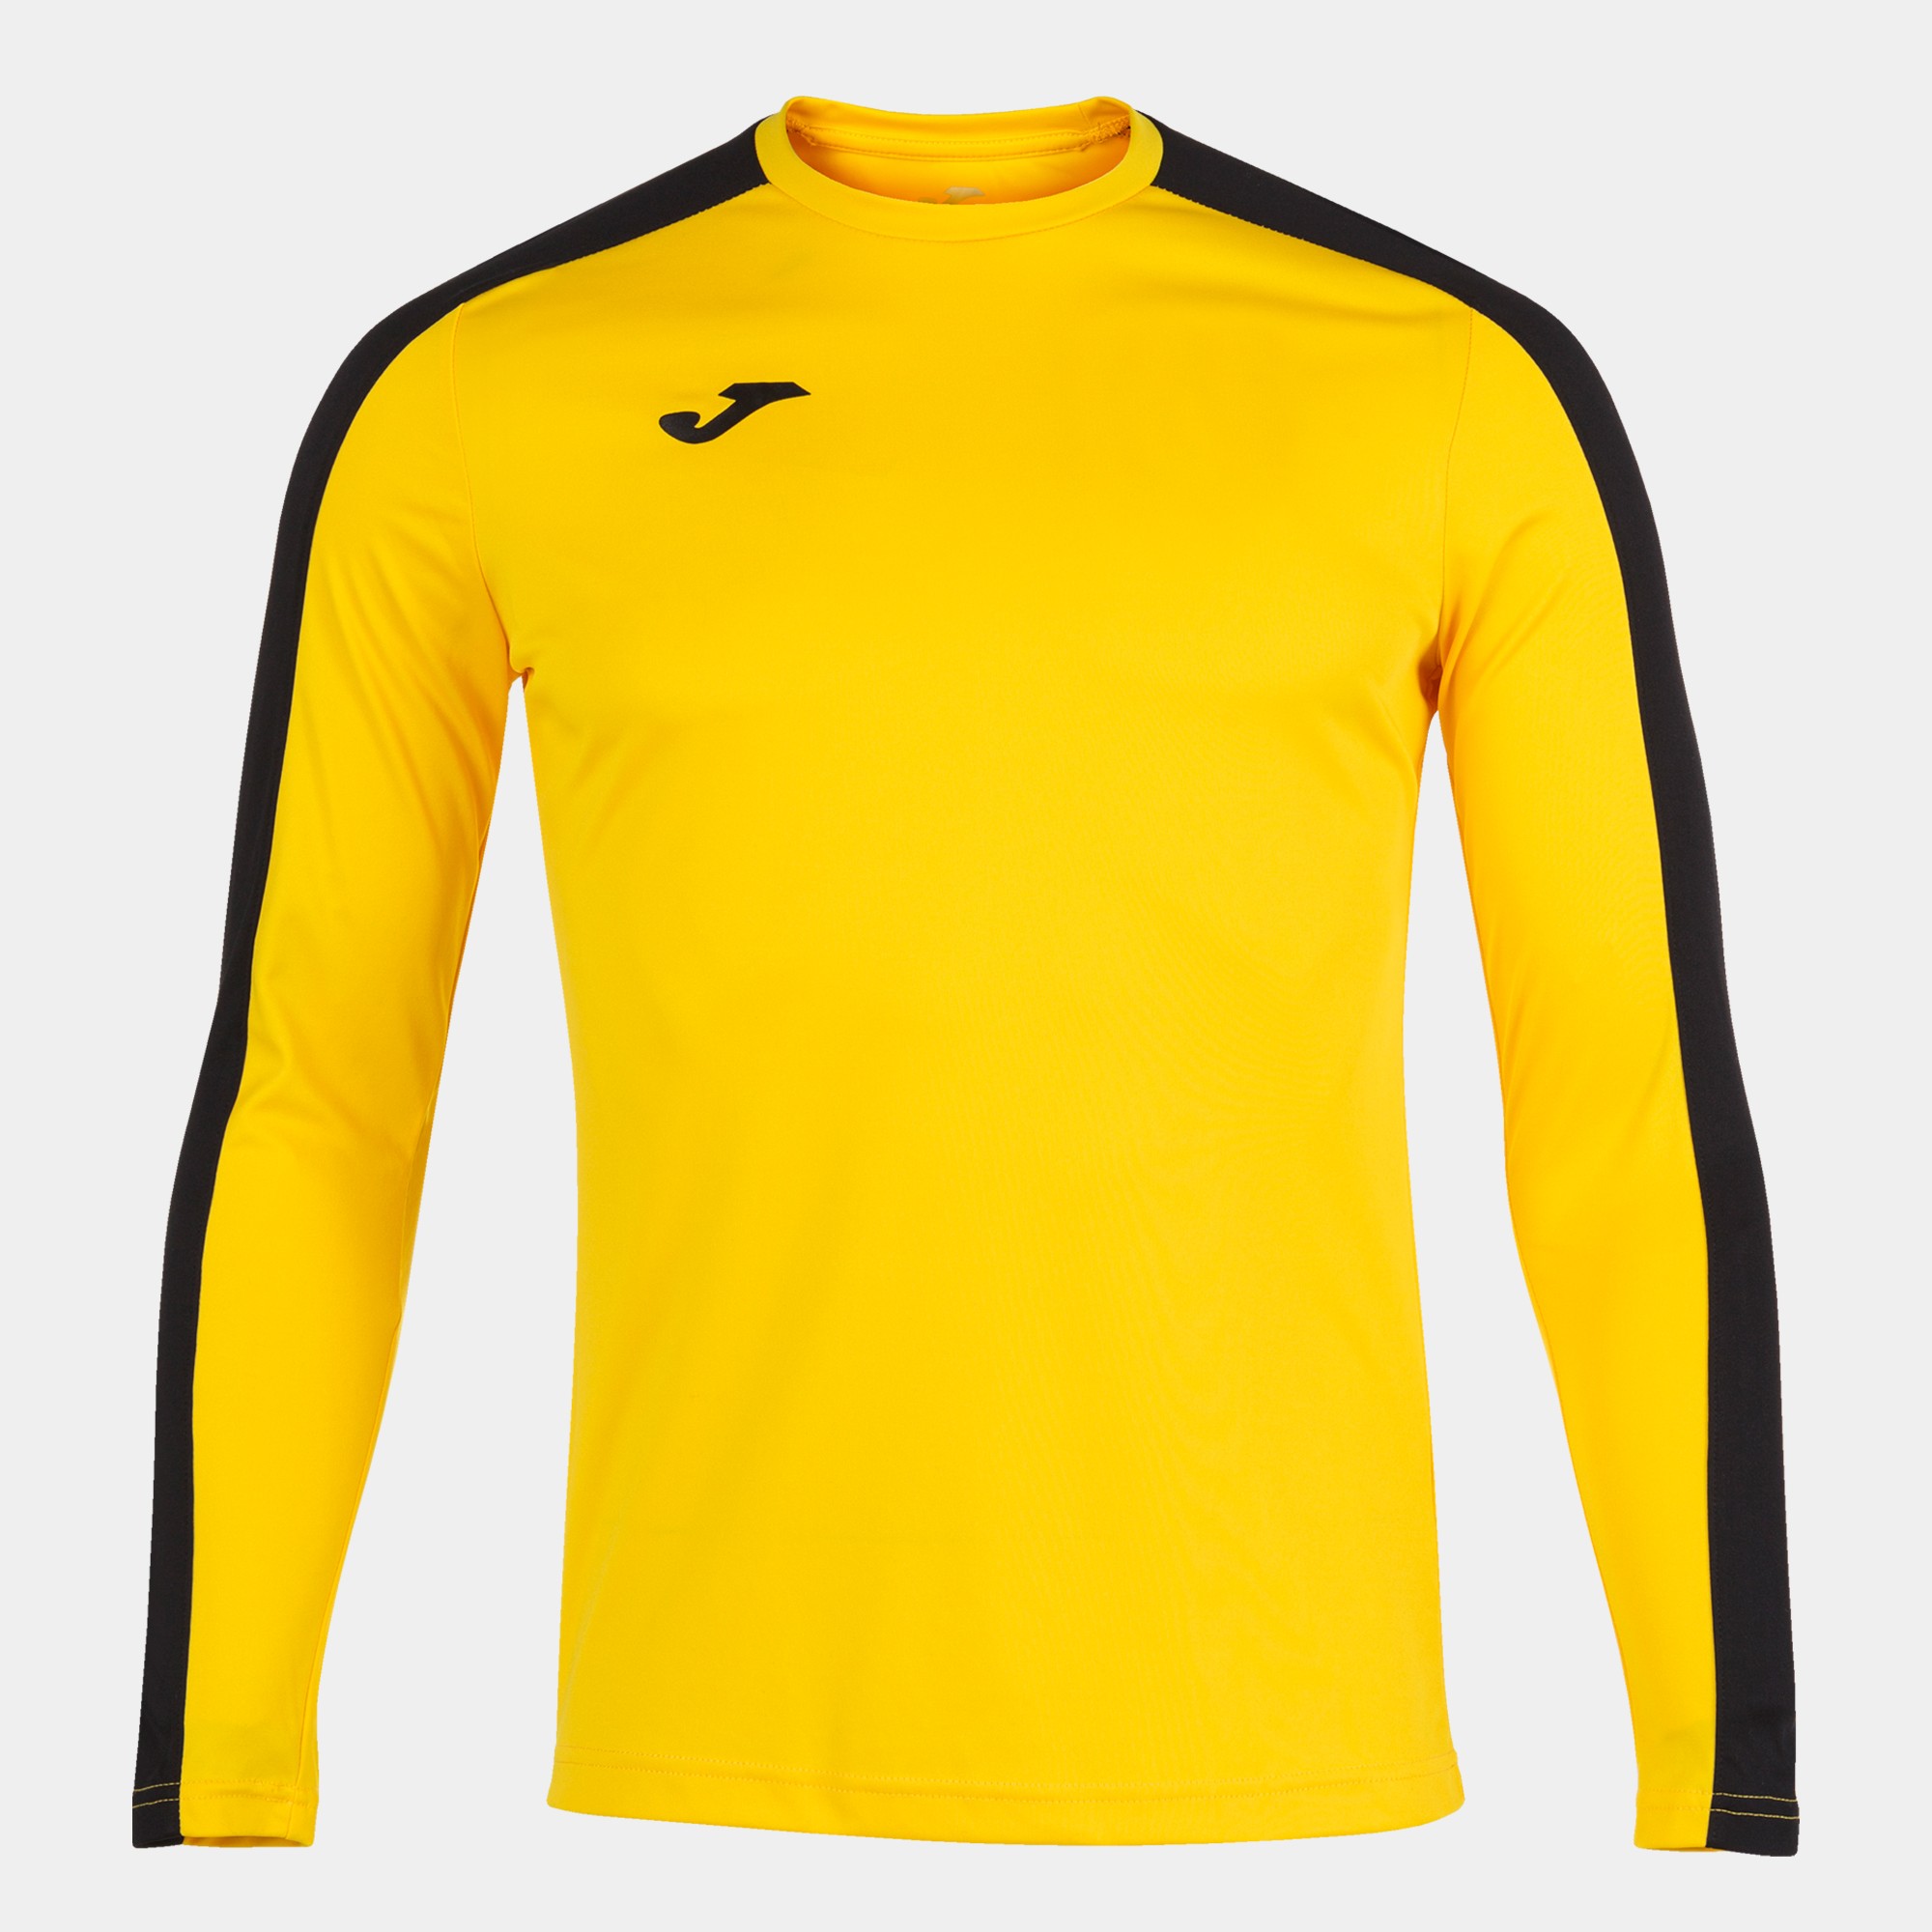 Camiseta manga larga unisex Brama Academy amarillo flúor